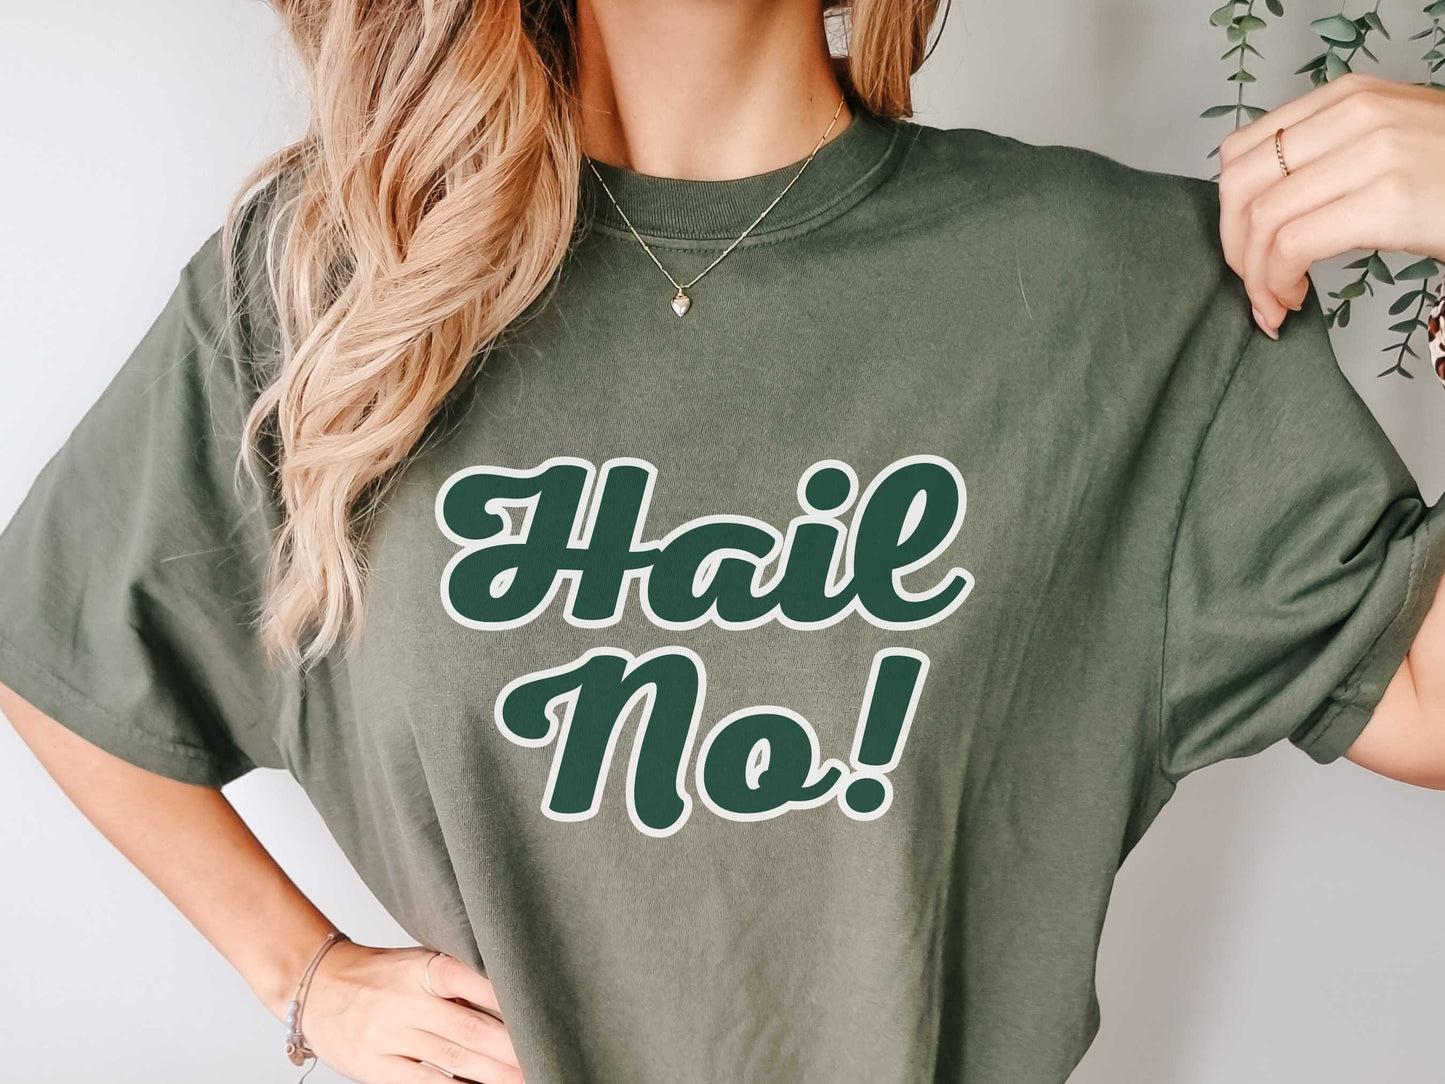 MSU "Hail No" T-Shirt in Moss